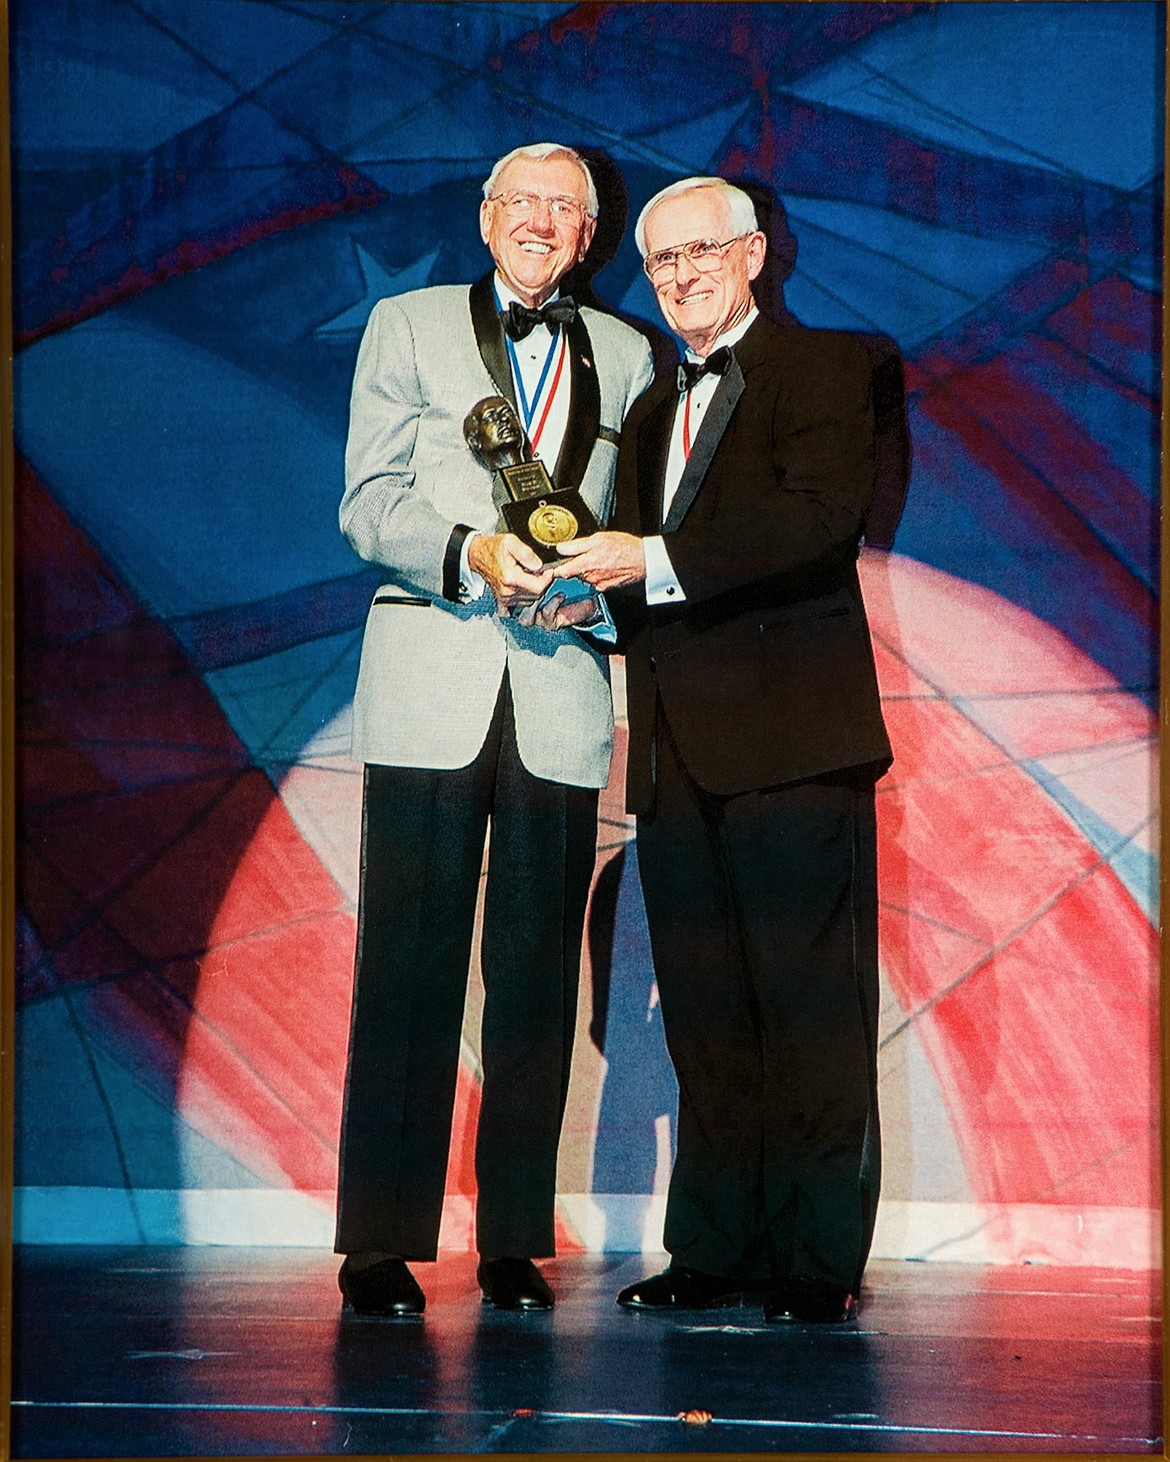 Harry S. Rinker hands Duane the Horatio Alger Award in 2004.